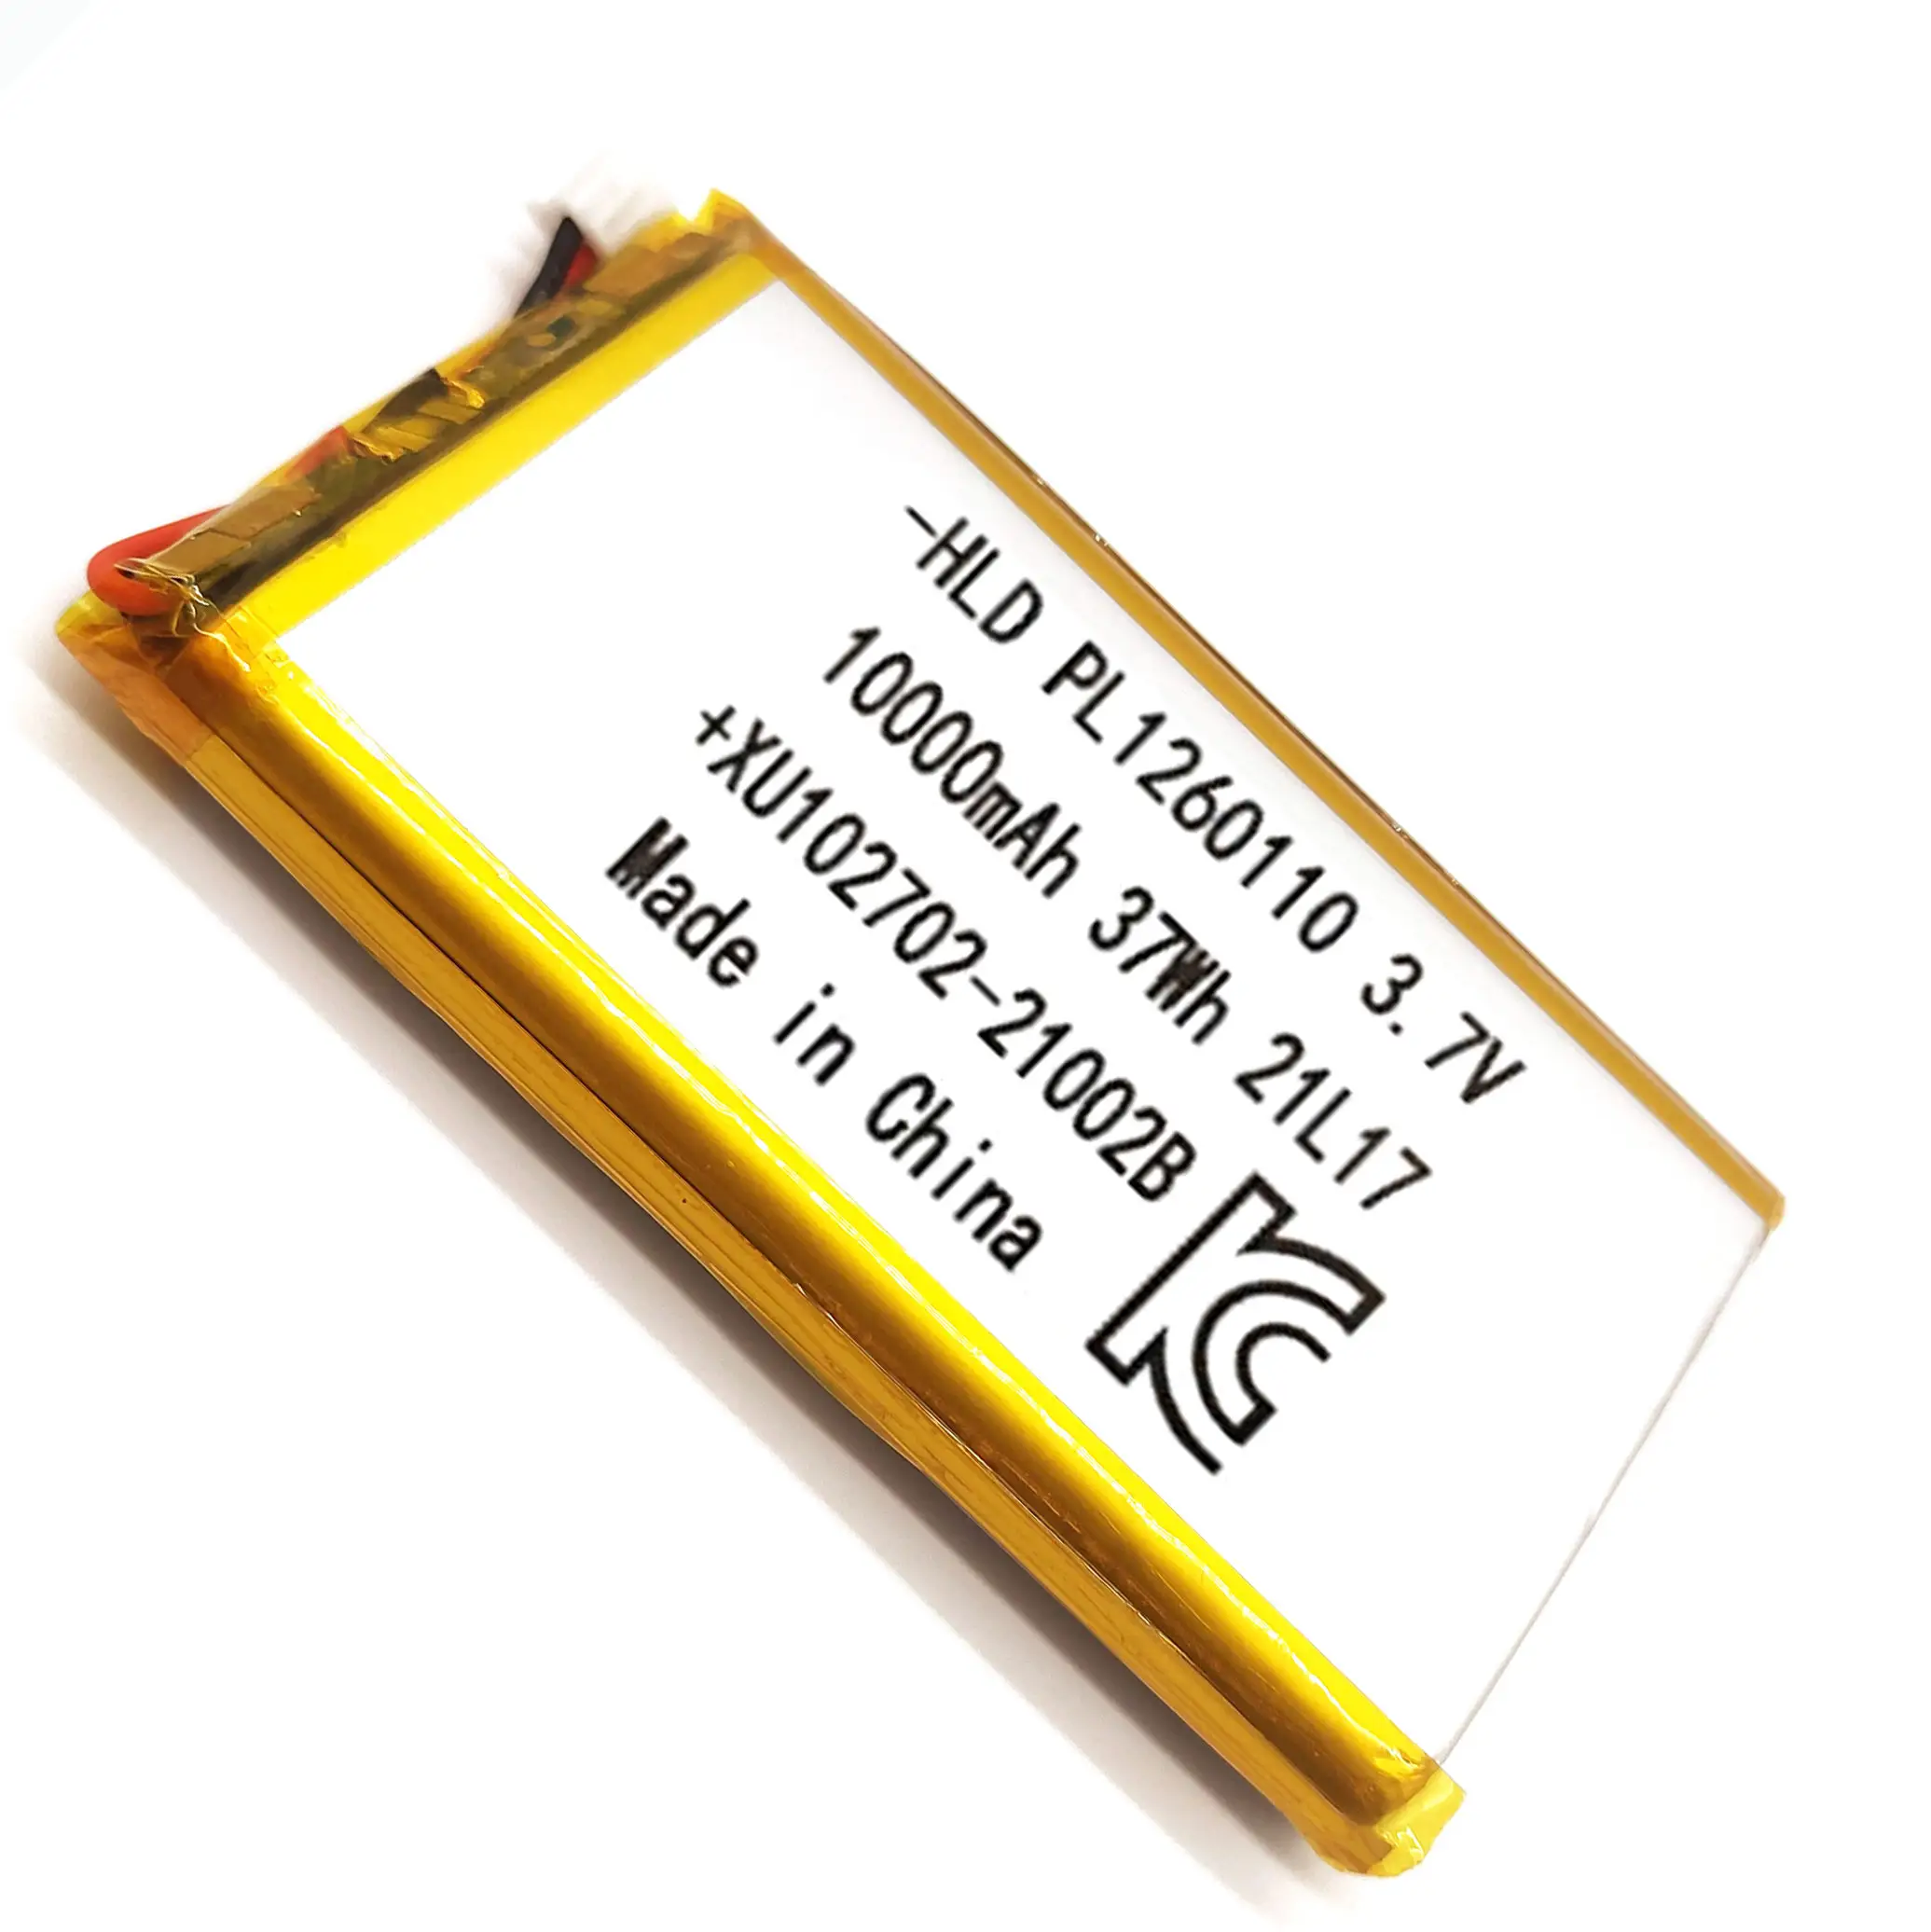 Batterie Rechargeable au Lithium polymère, certifiée Kc 1260110, grande Lipo 3.7 V, 10000Mah, charge ternaire Lipo pour batterie externe